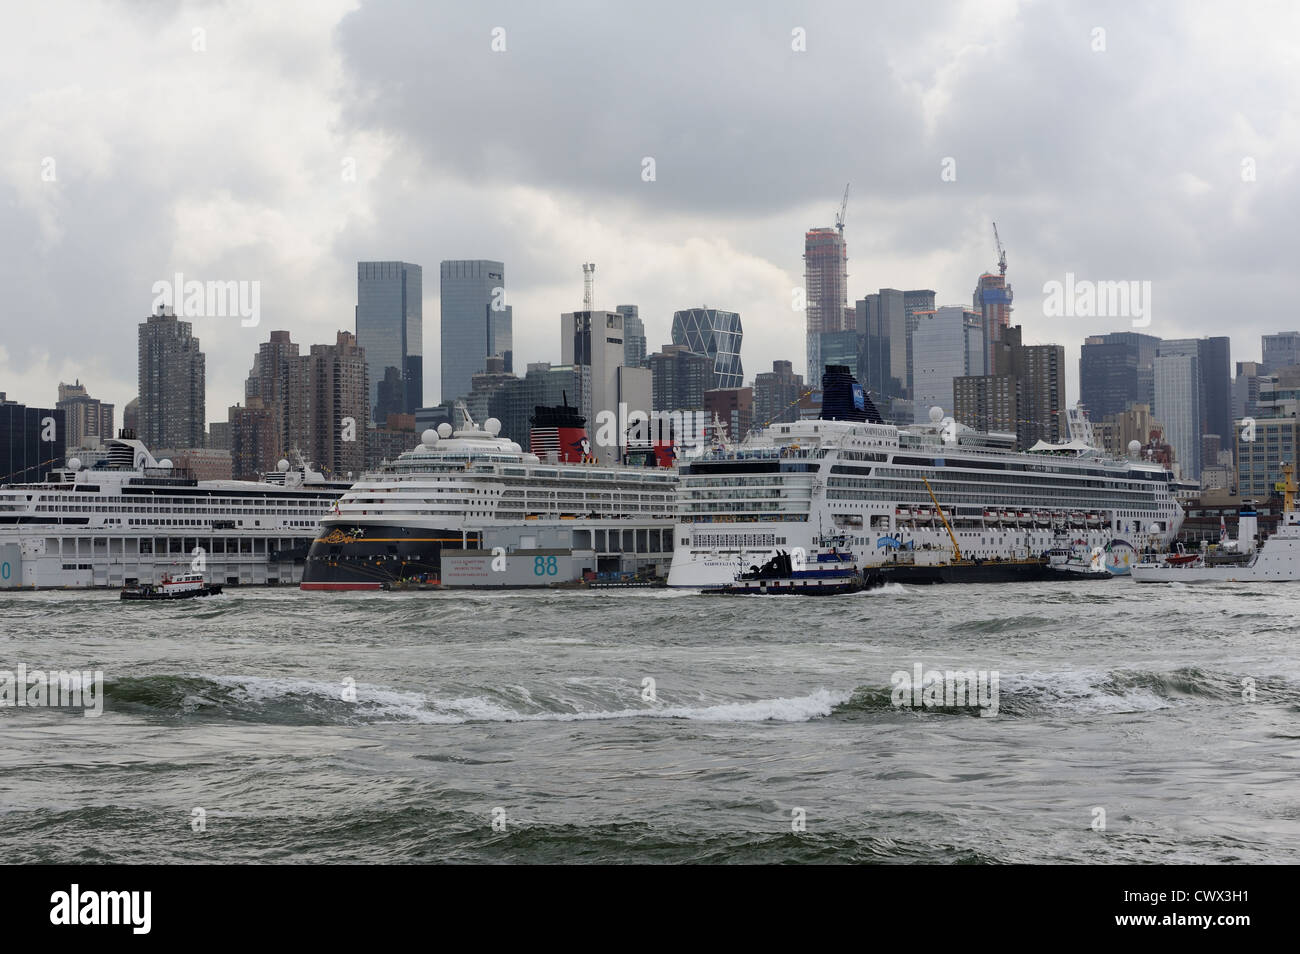 Una procesión de remolcadores pasando la terminal de cruceros de Manhattan con tres cruceros en el puerto. Foto de stock